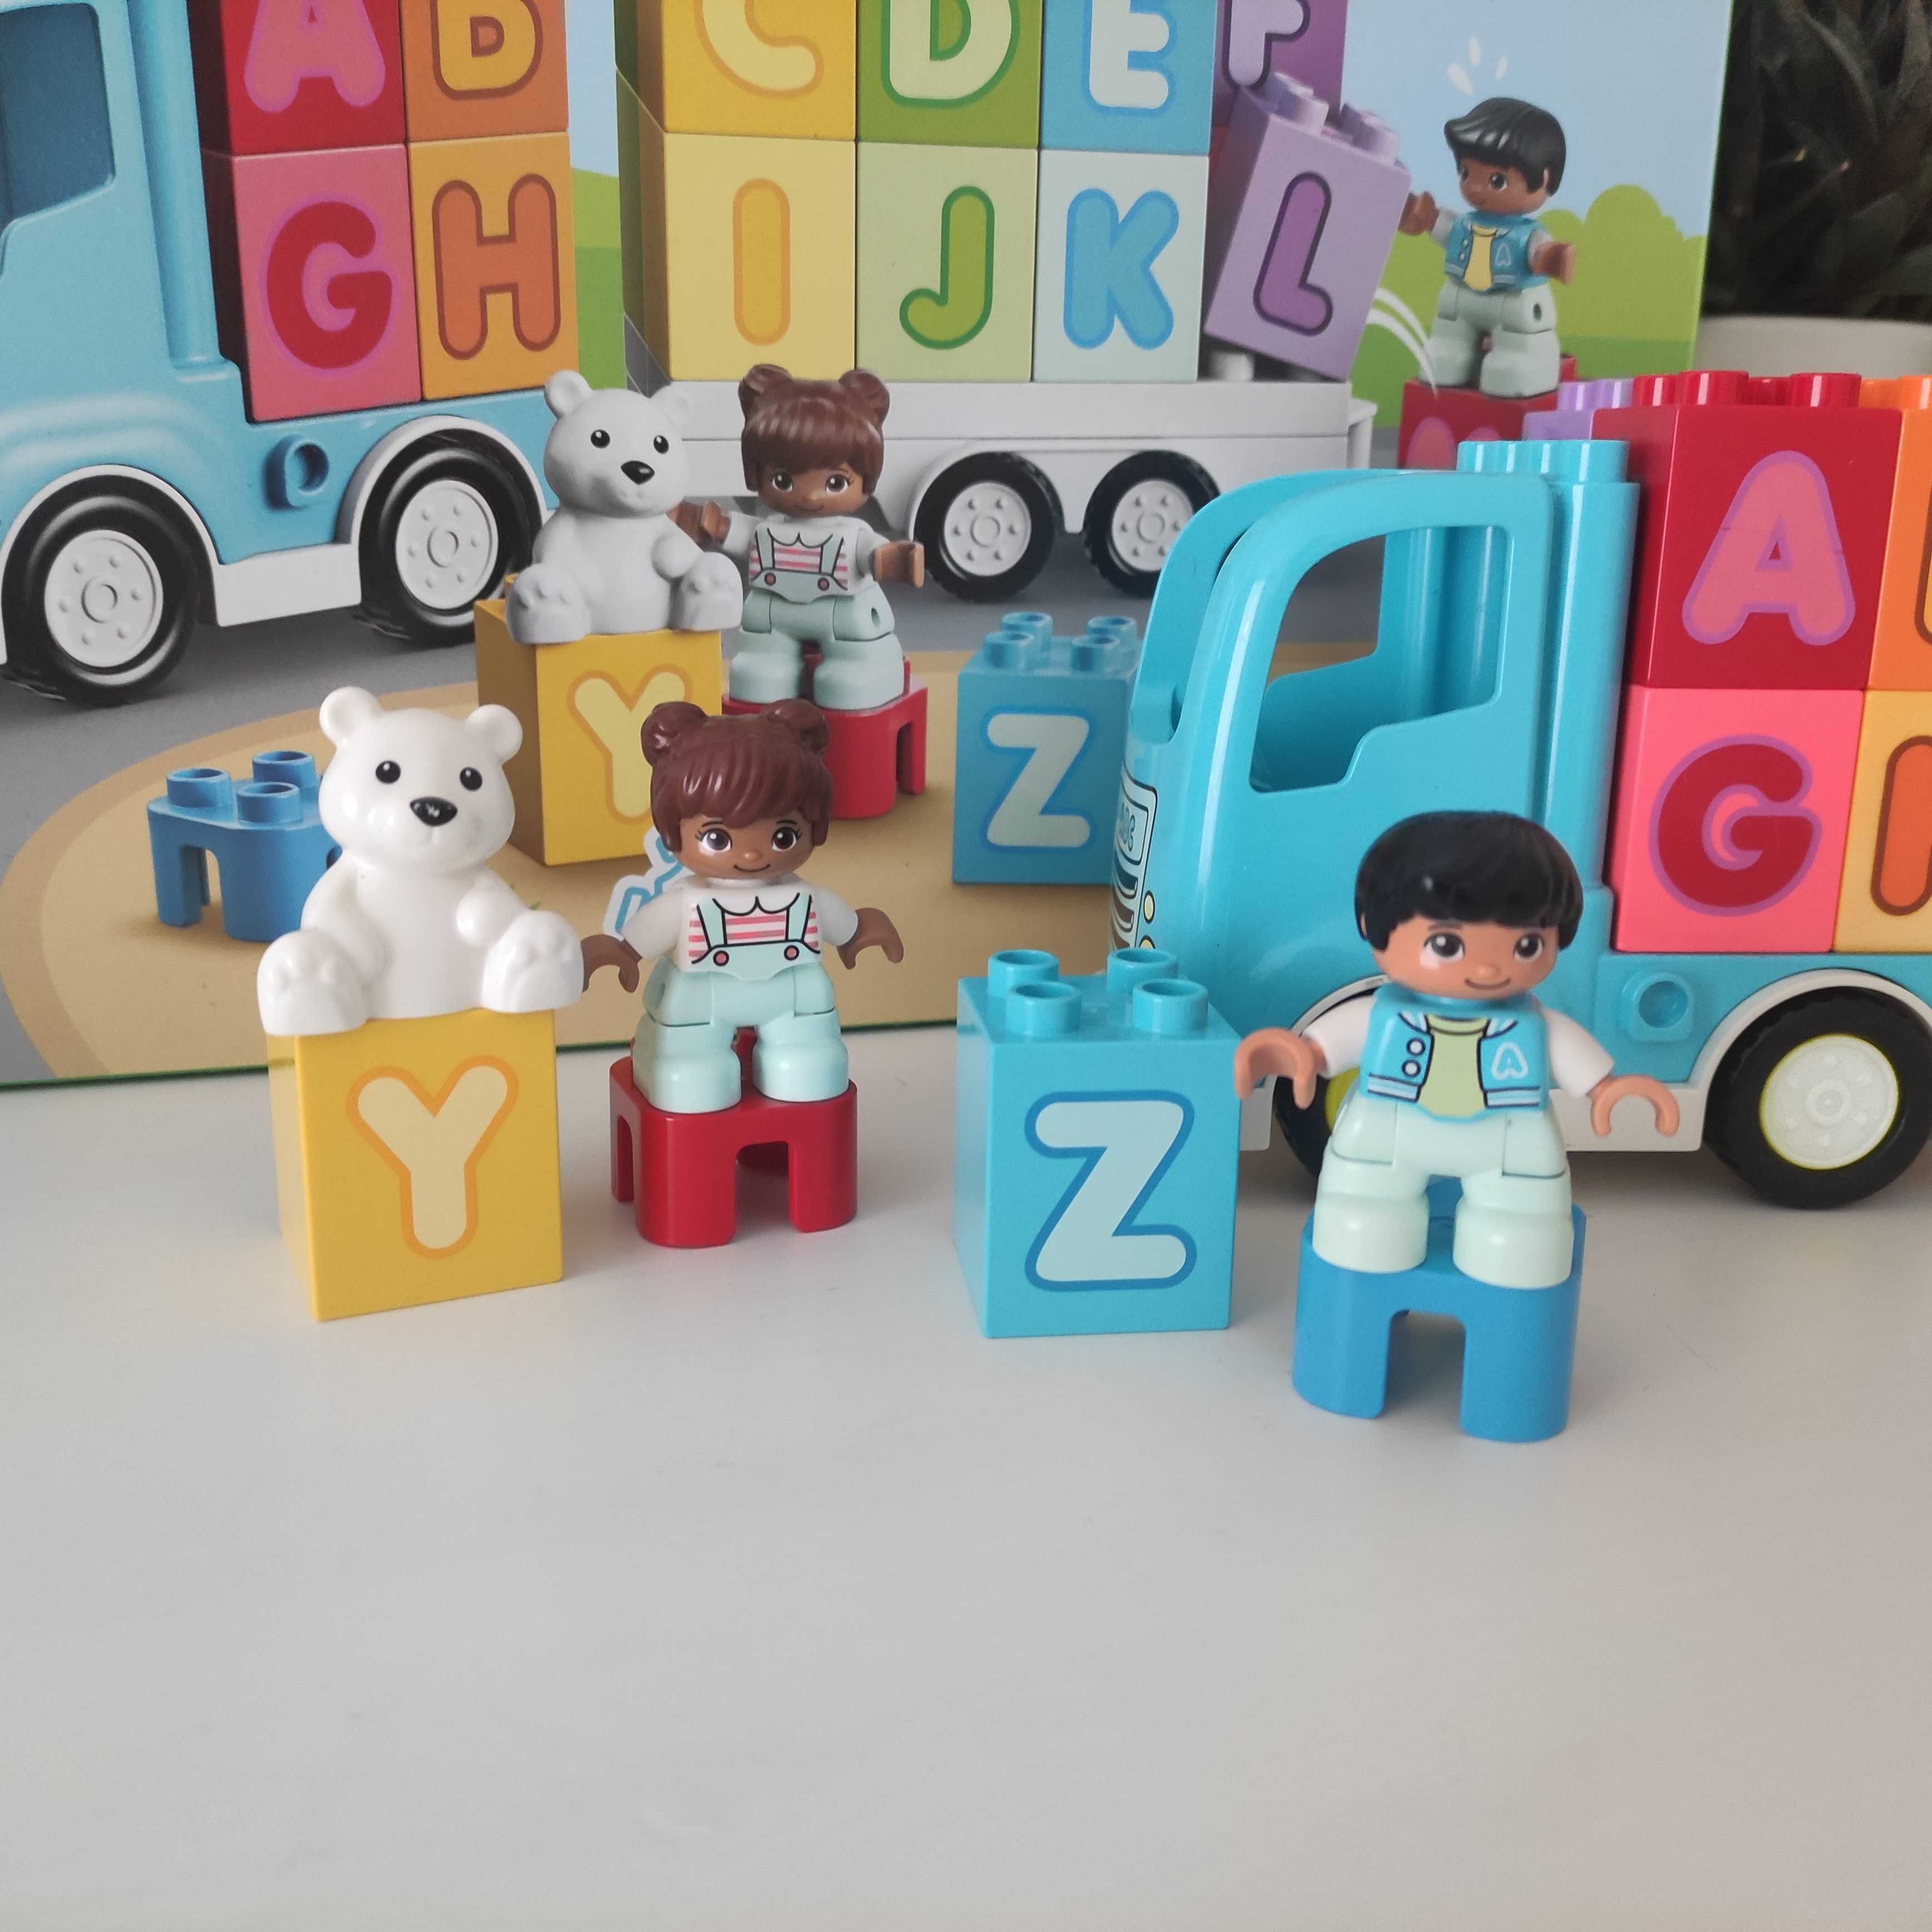 LEGO Duplo 10915 Ciężarówka z alfabetem